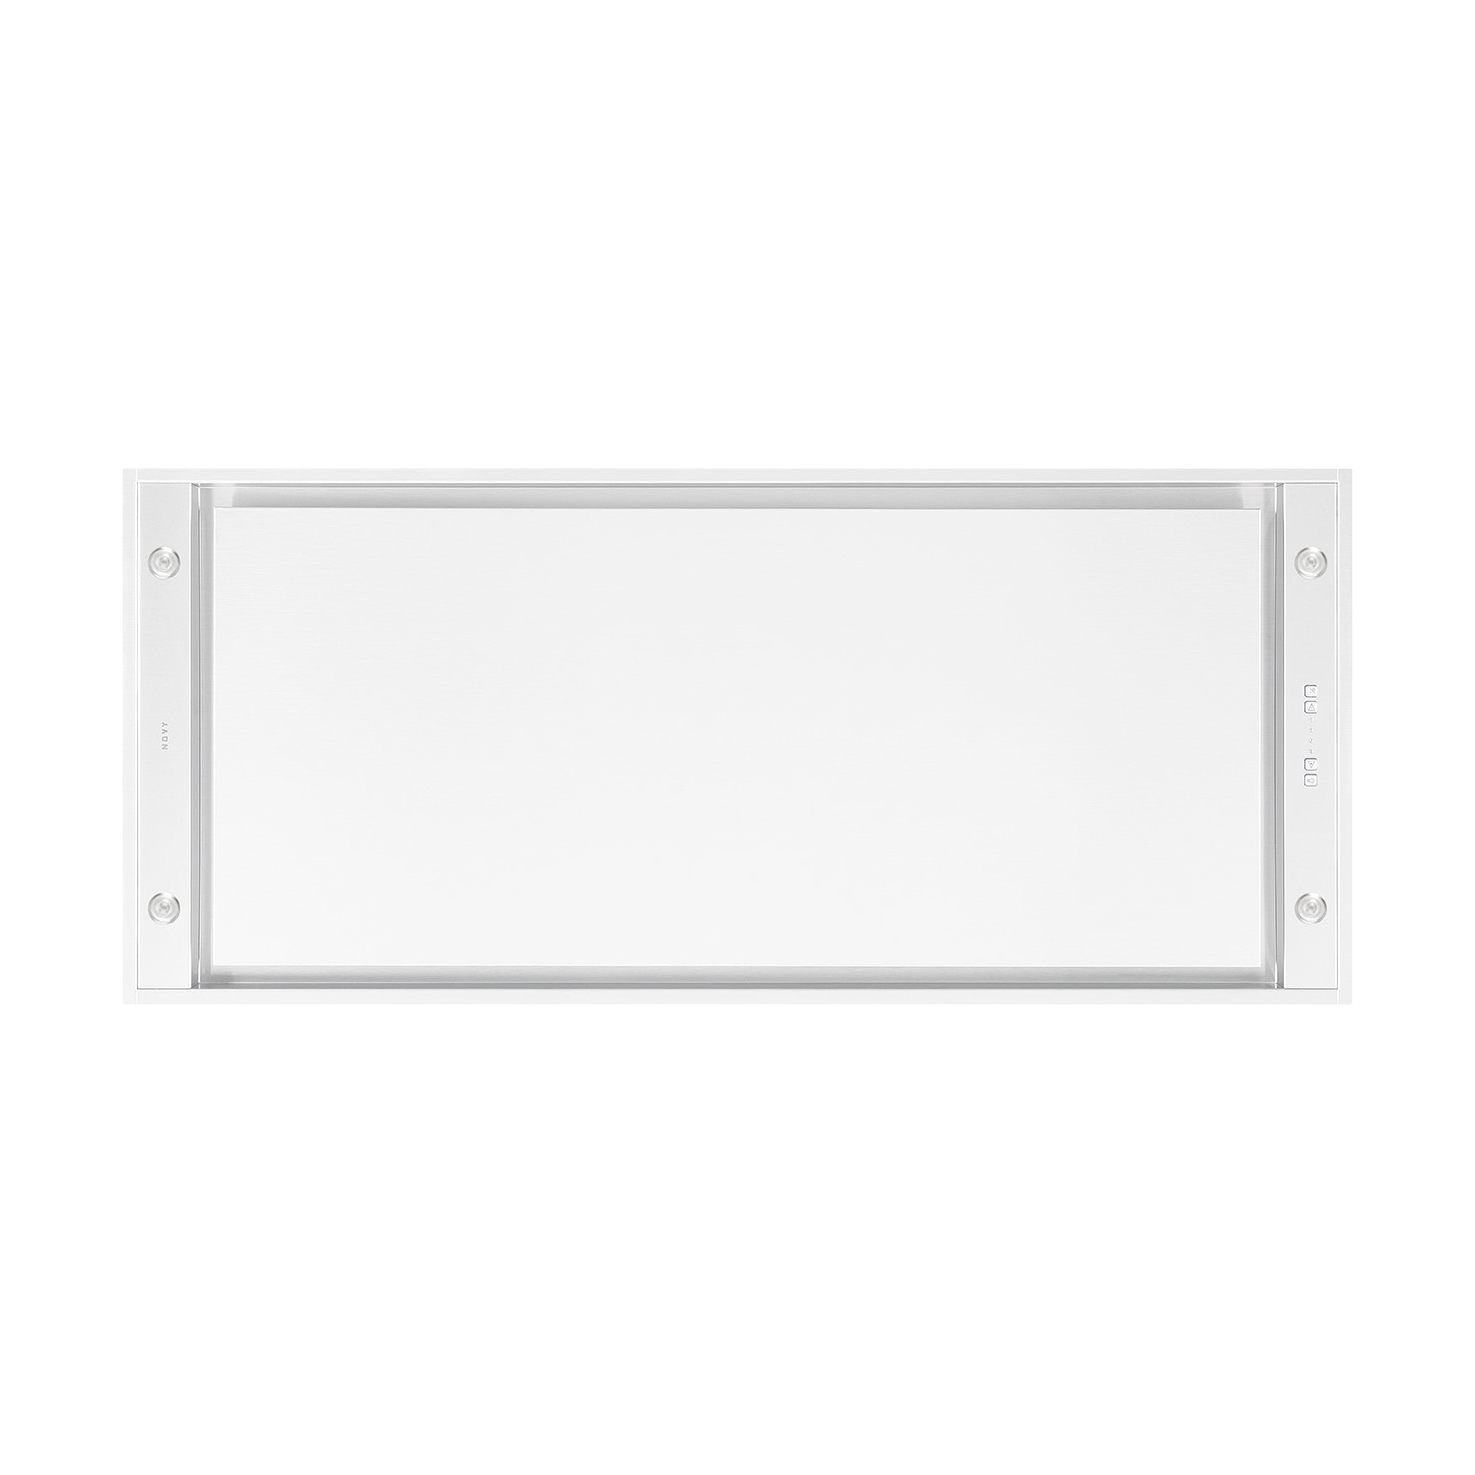 6821 Ceiling unit Novy Pureline Compact 120 cm White 